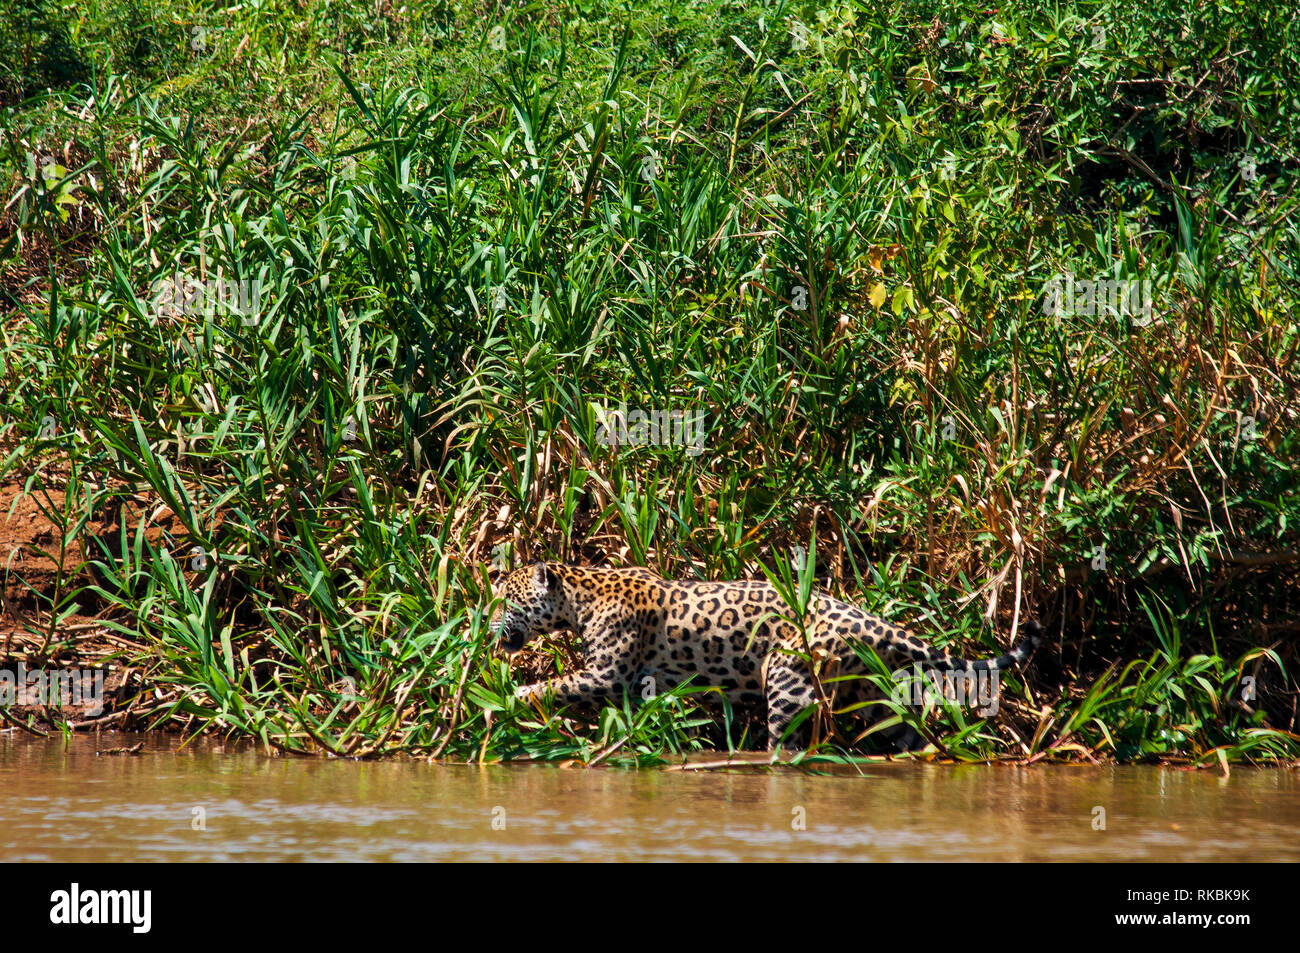 Jaguar das größte Raubtier in Südamerika Jagd Alligatoren im Tres Irmãos Fluss, Pantanal von Mato Grosso, Brasilien Stockfoto